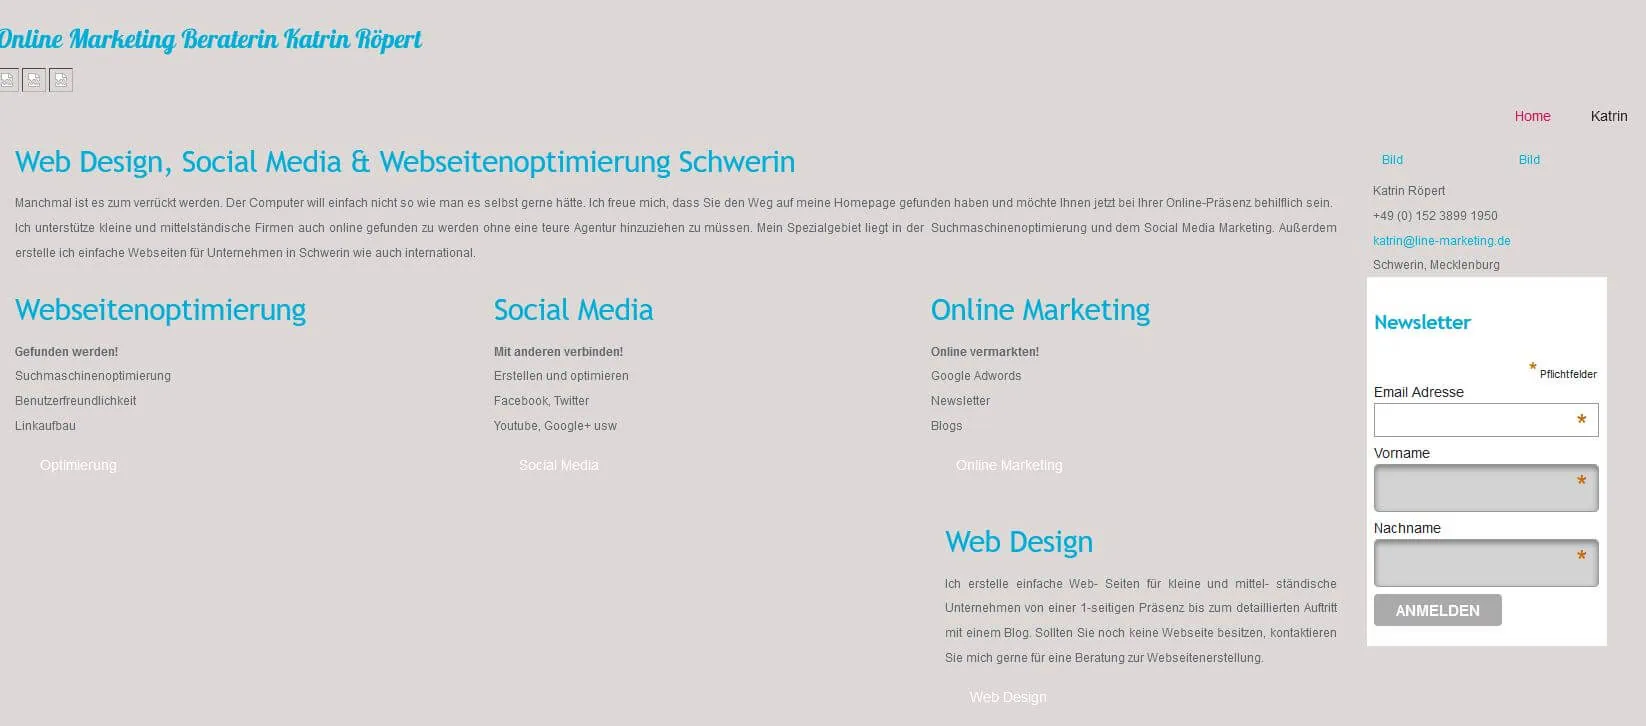 Die Website von Line-Marketing 2012